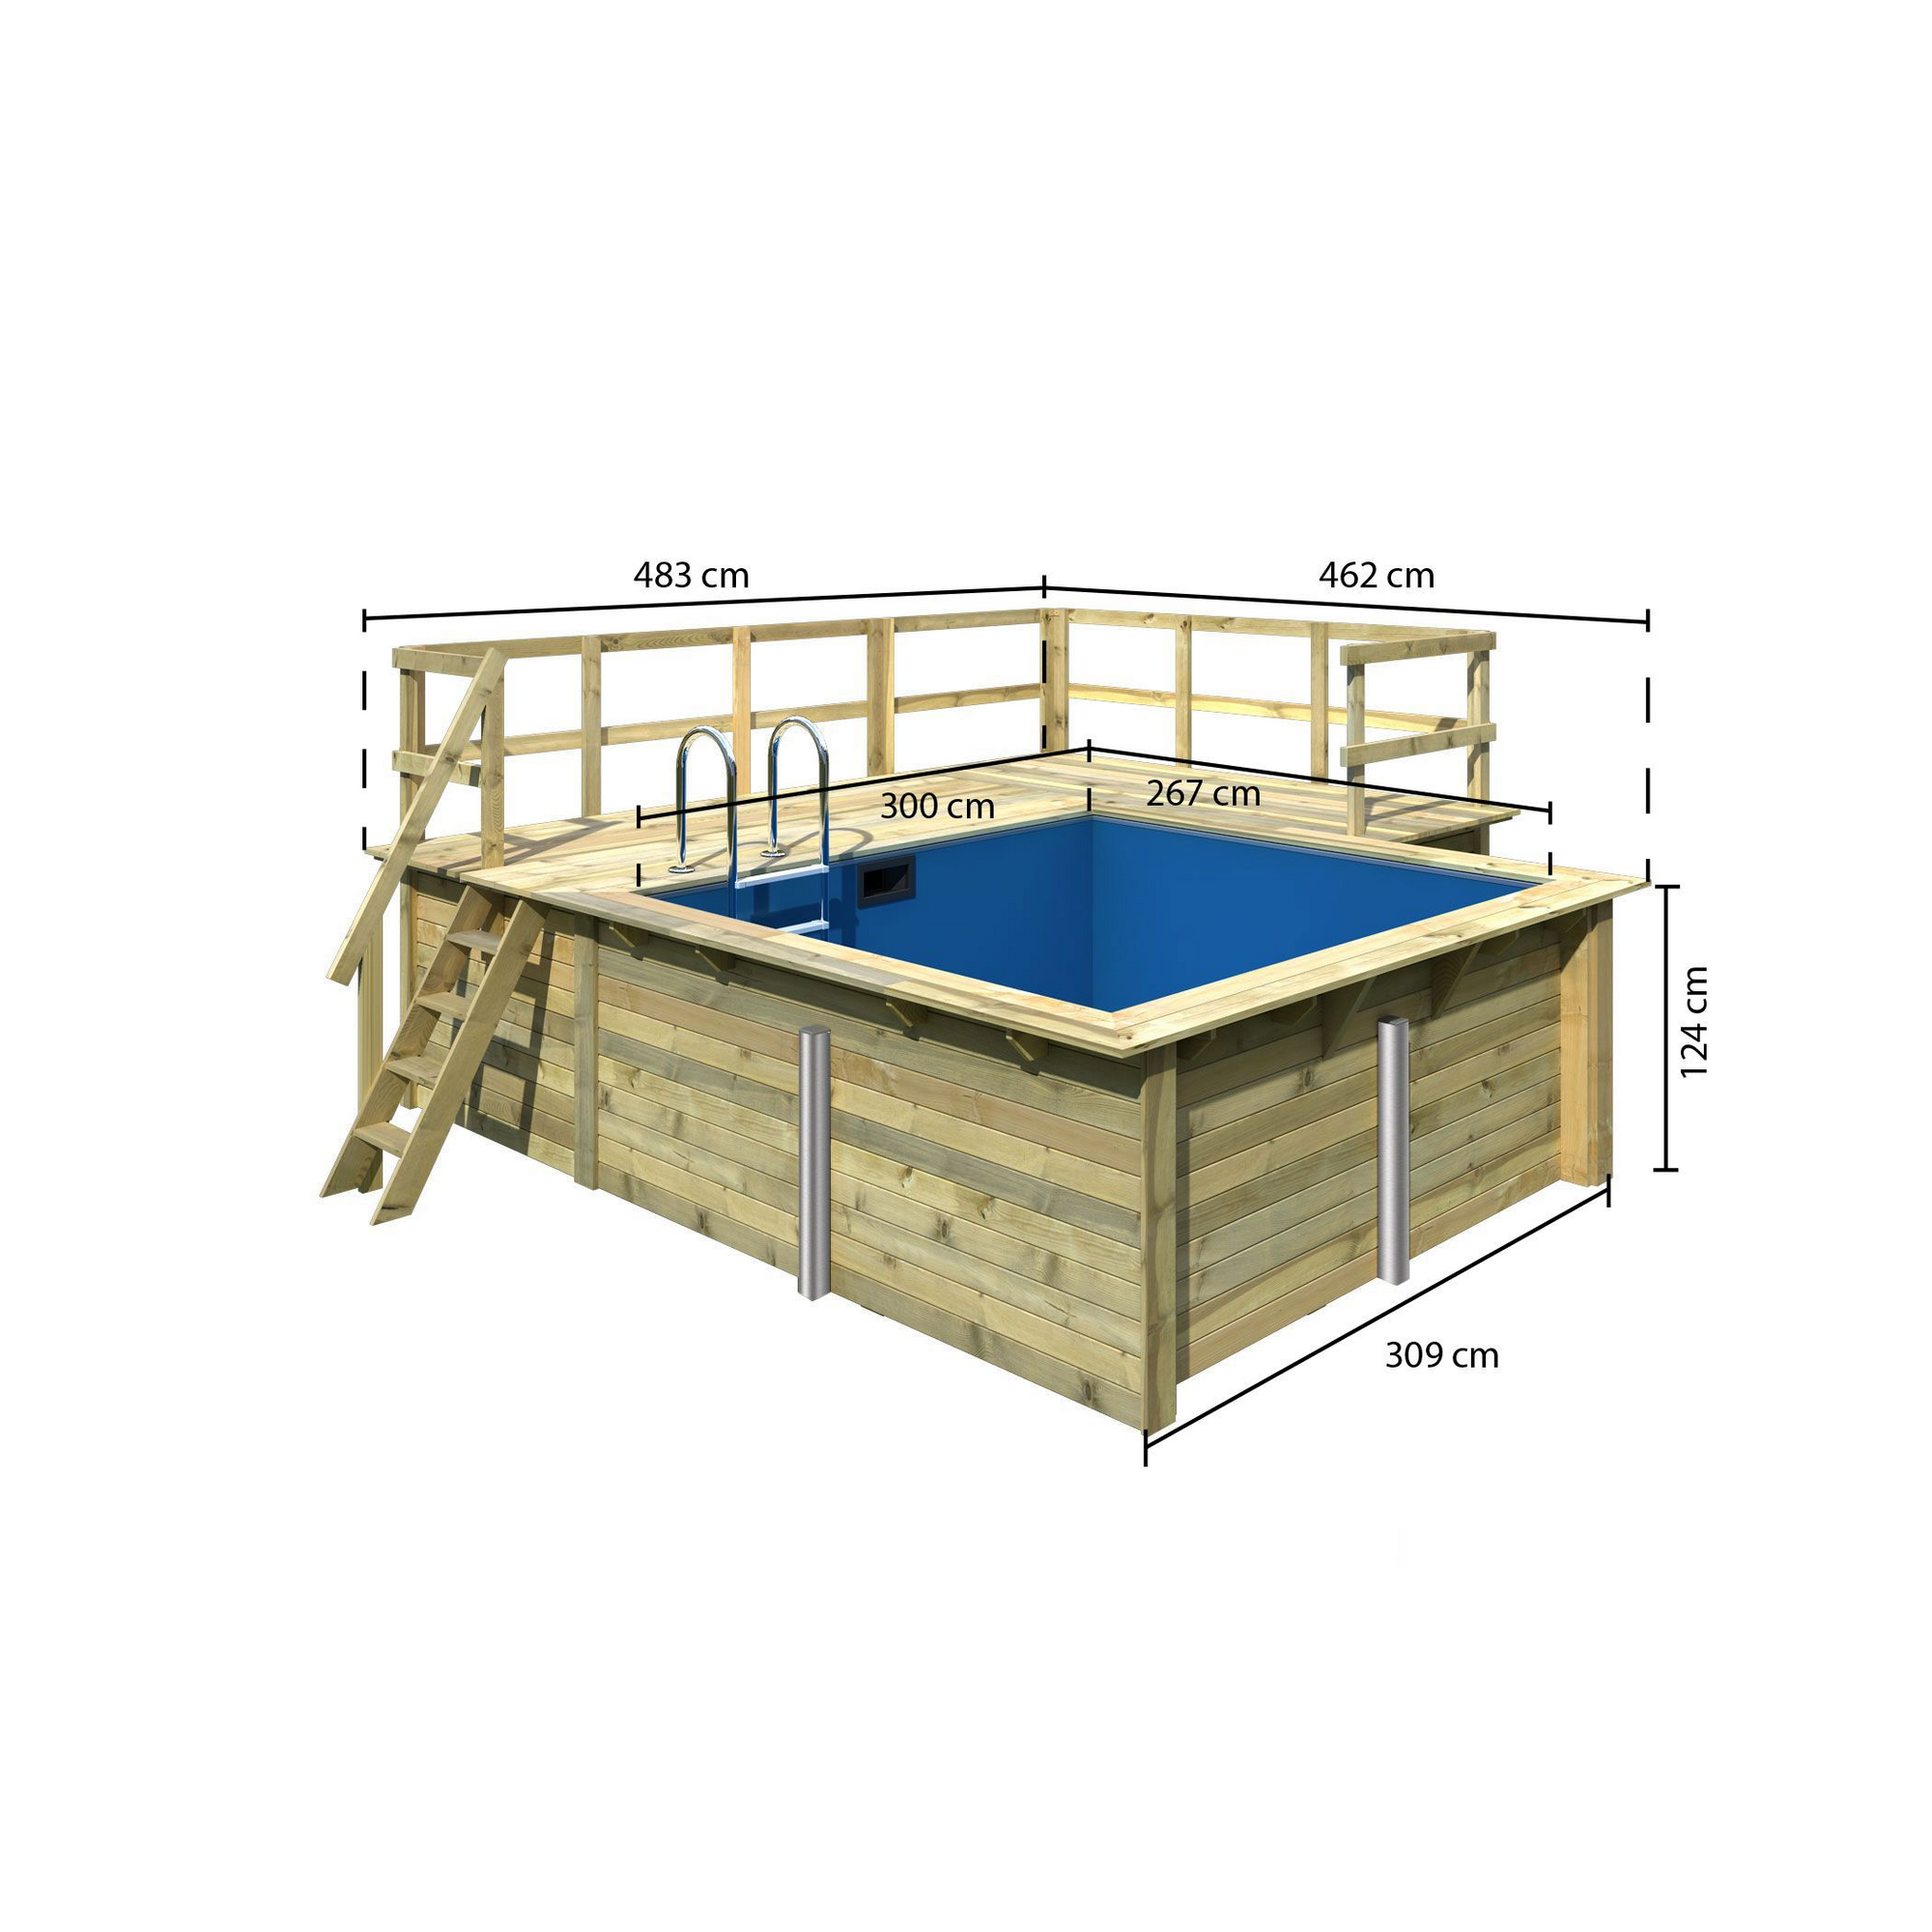 Massivholzpool-Set 'Modell Rechteck pool-Set 1 B' 300 x 267 x 124 cm mit Sonnendeck und Einhängeleiter + product picture